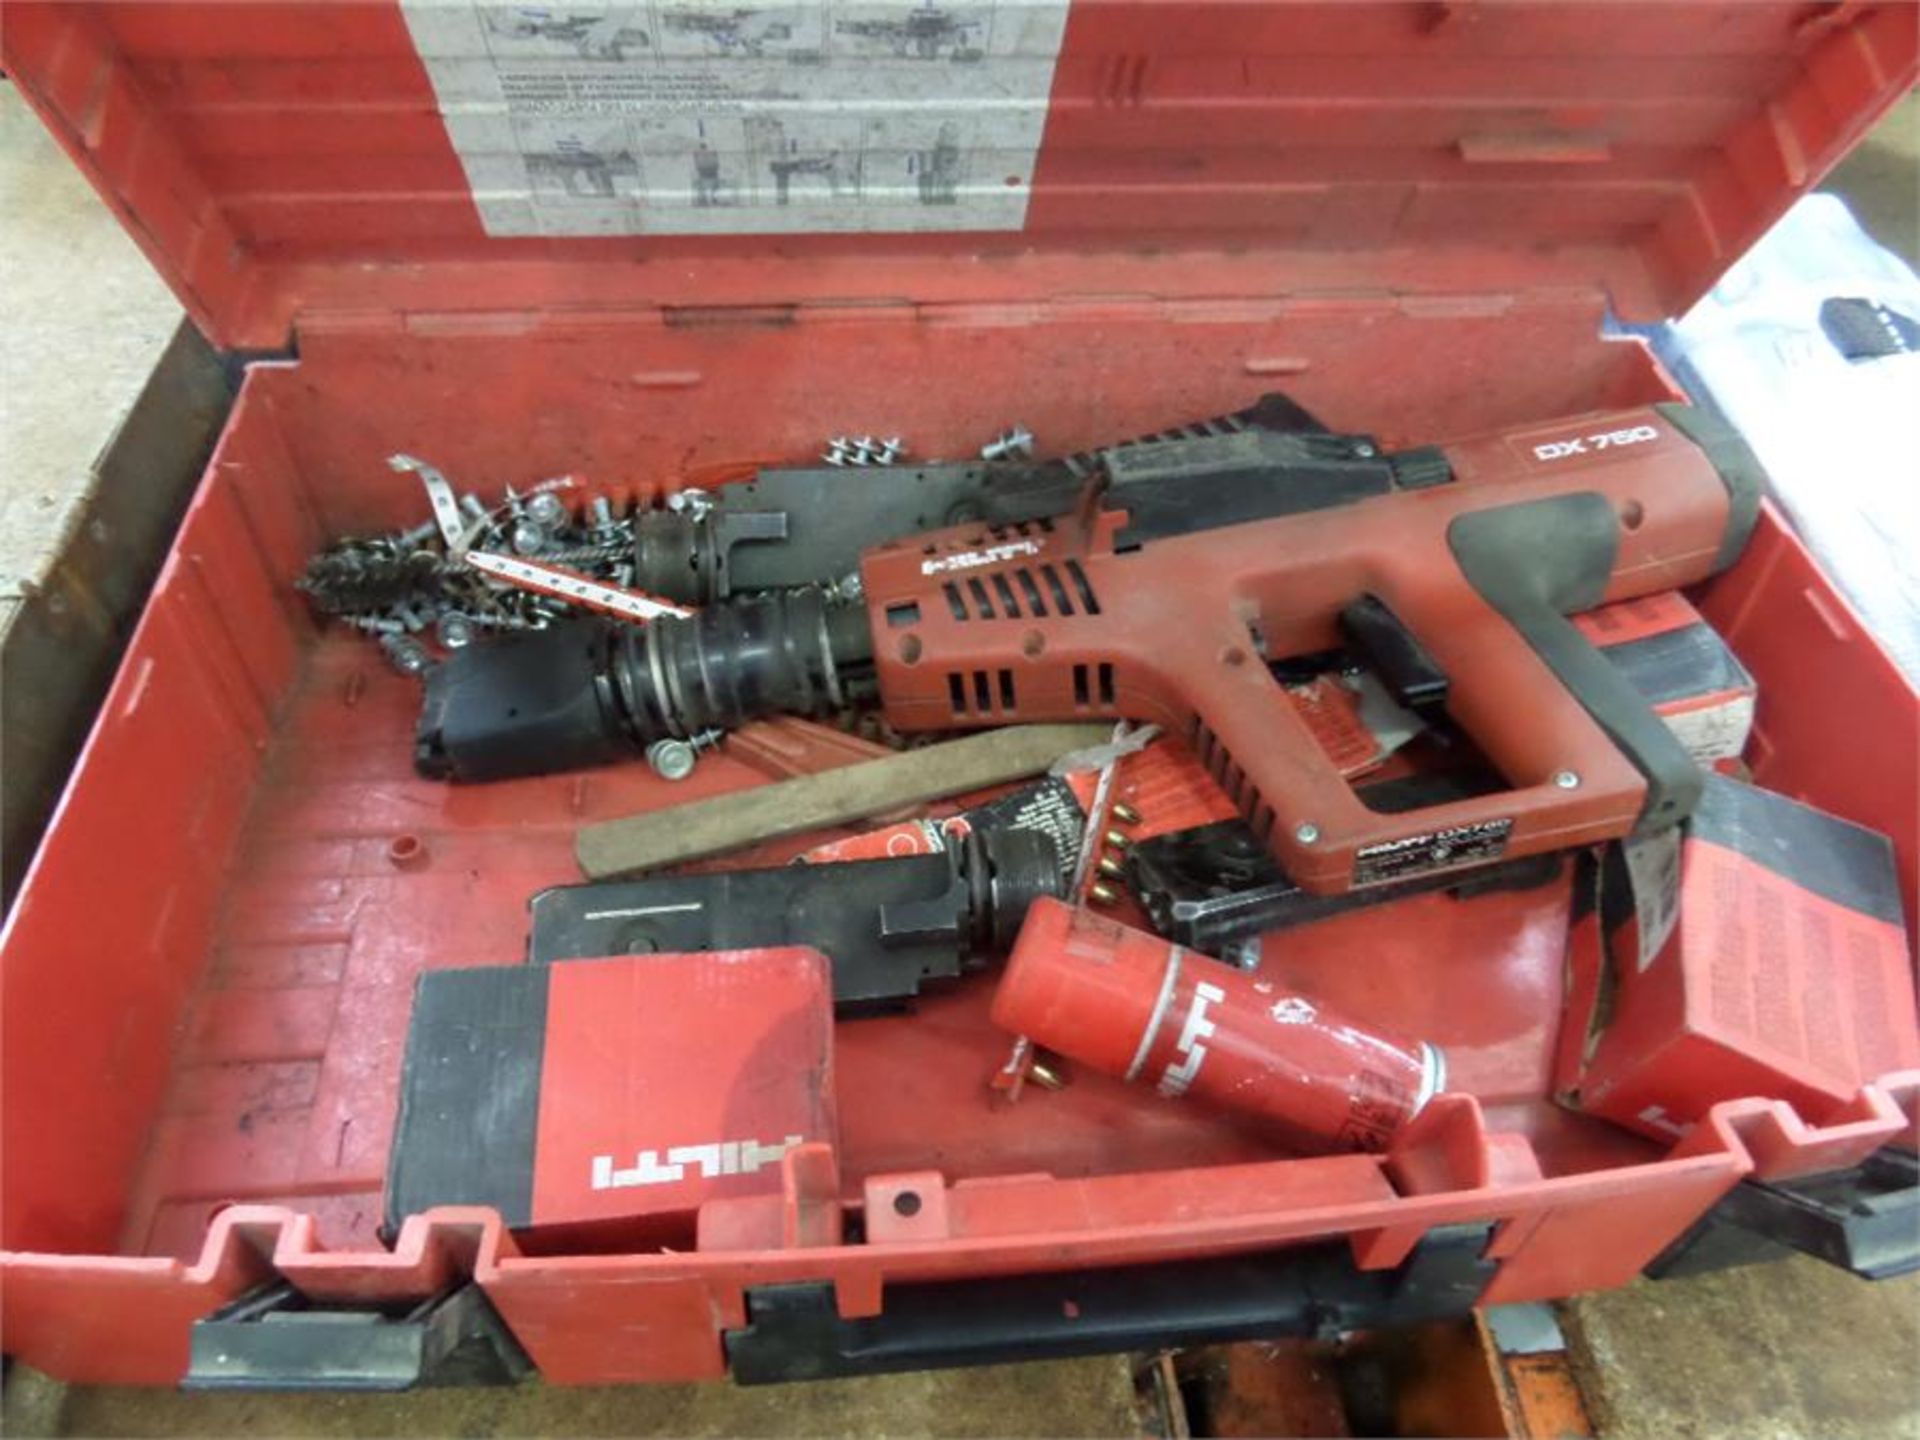 HILTI DX 750 GUN IN CASE (WORKING)